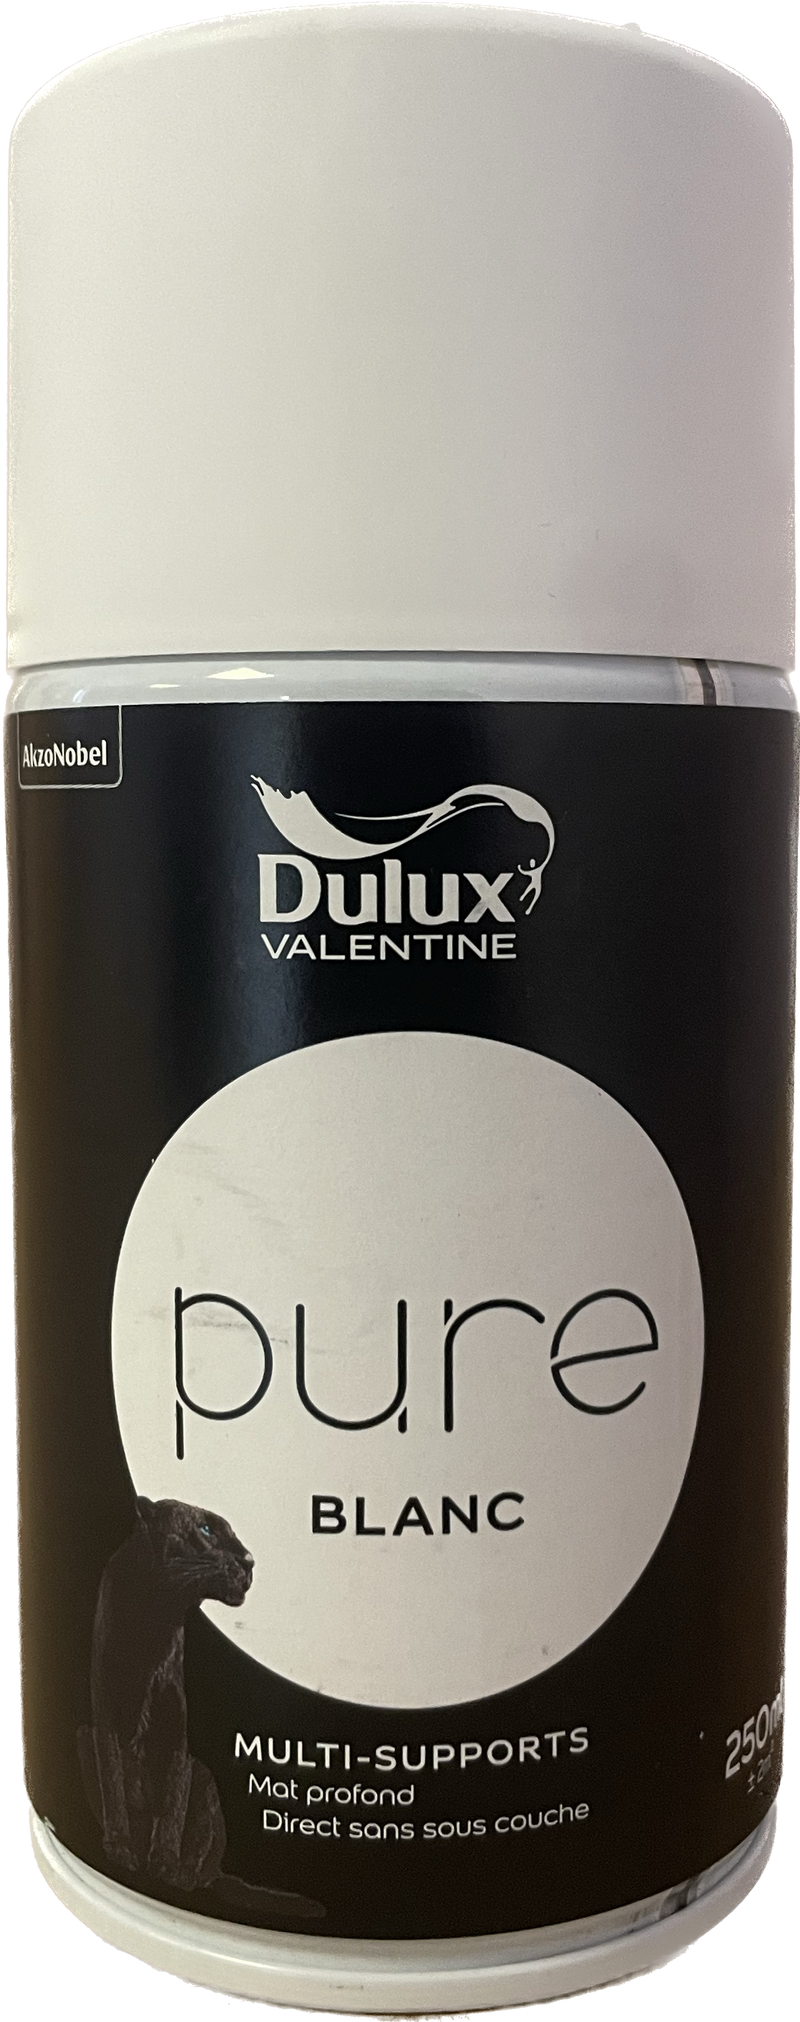 Sprays Pure Dulux Valentine 250 mL